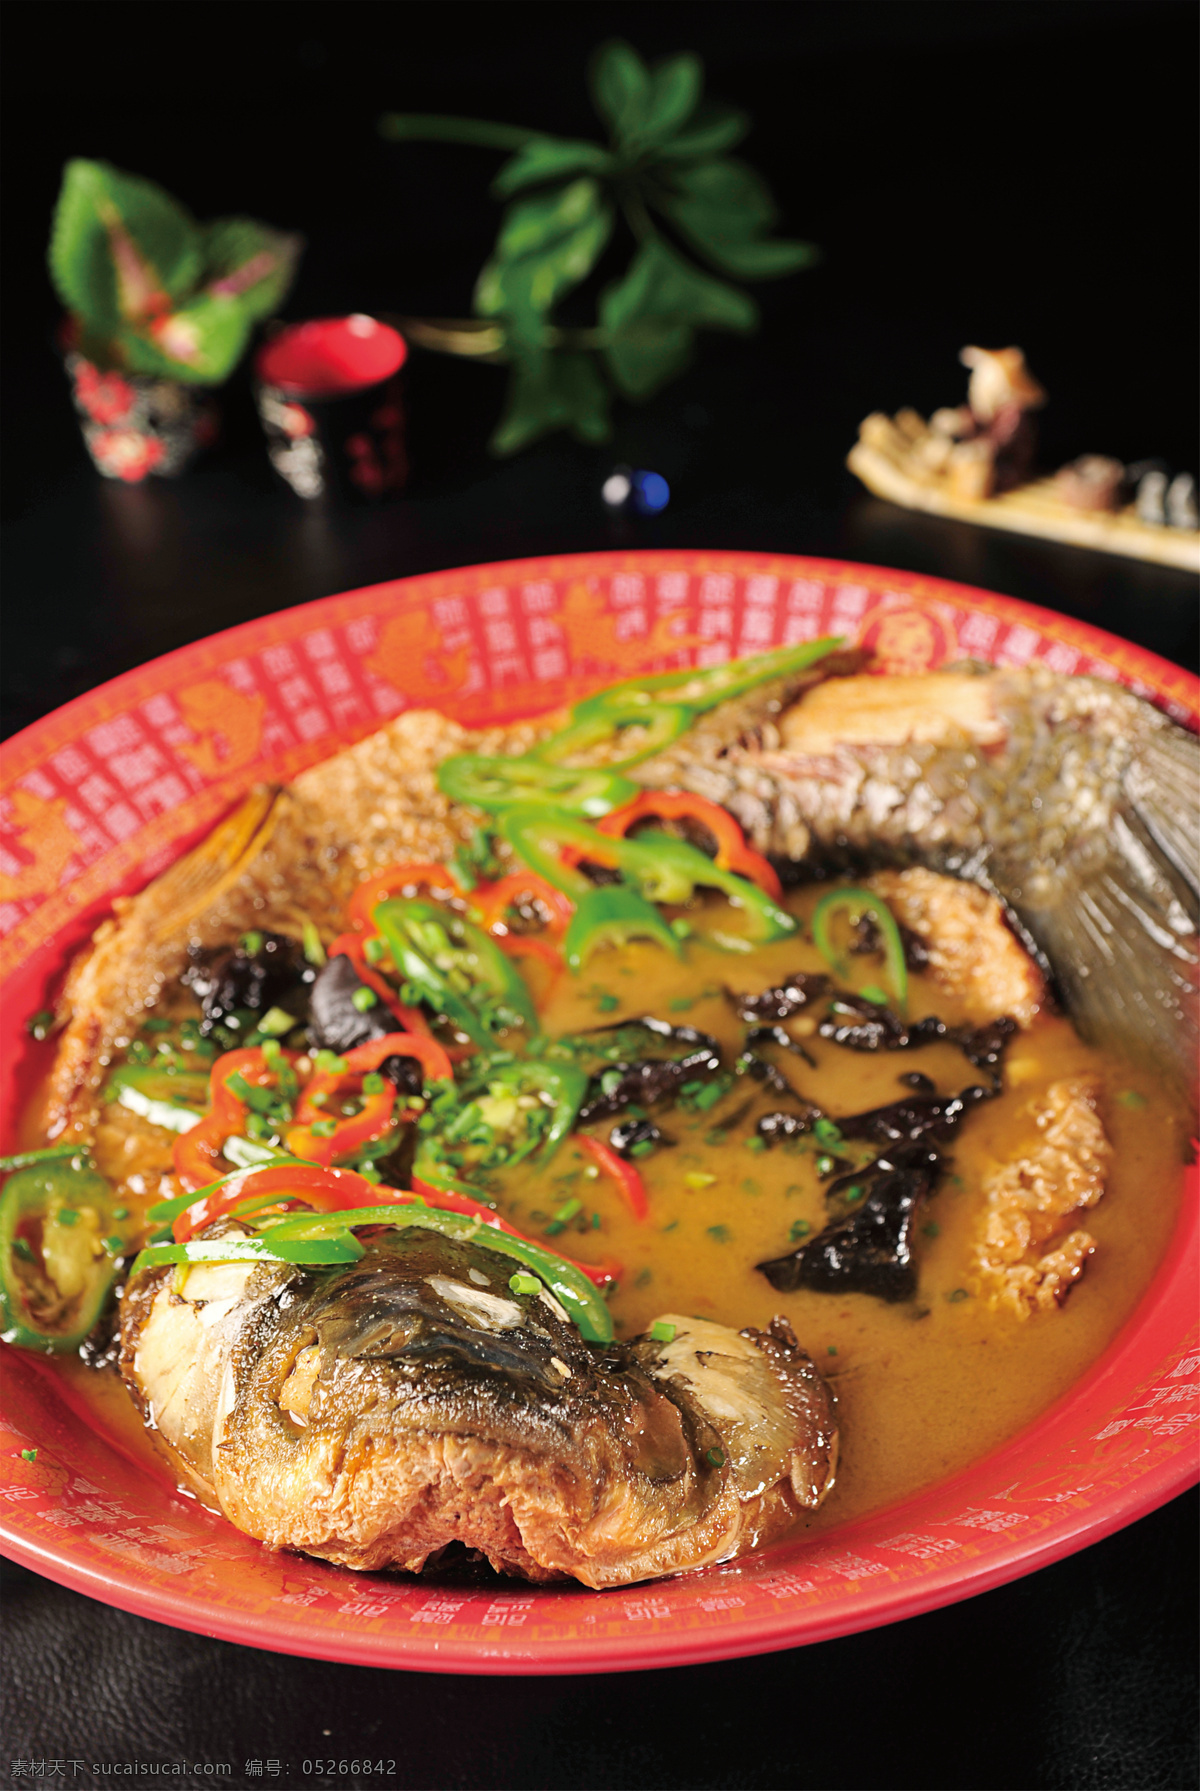 丹江大碗鱼 美食 传统美食 餐饮美食 高清菜谱用图